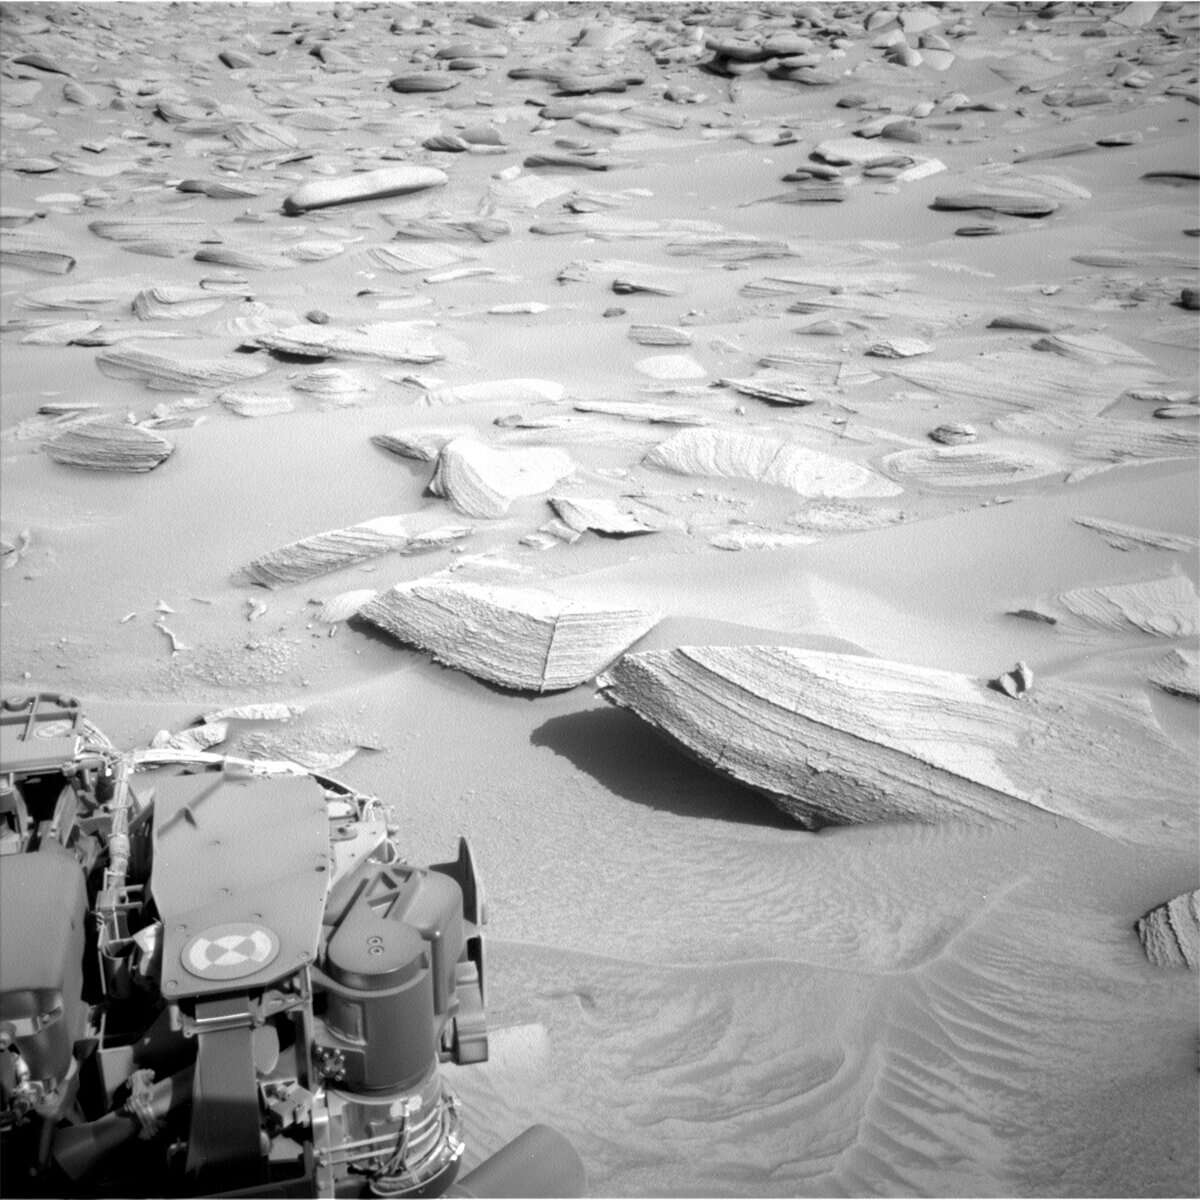 Марс, Curiosity, 3783-3784 сол: День, идеальный для фотографирования